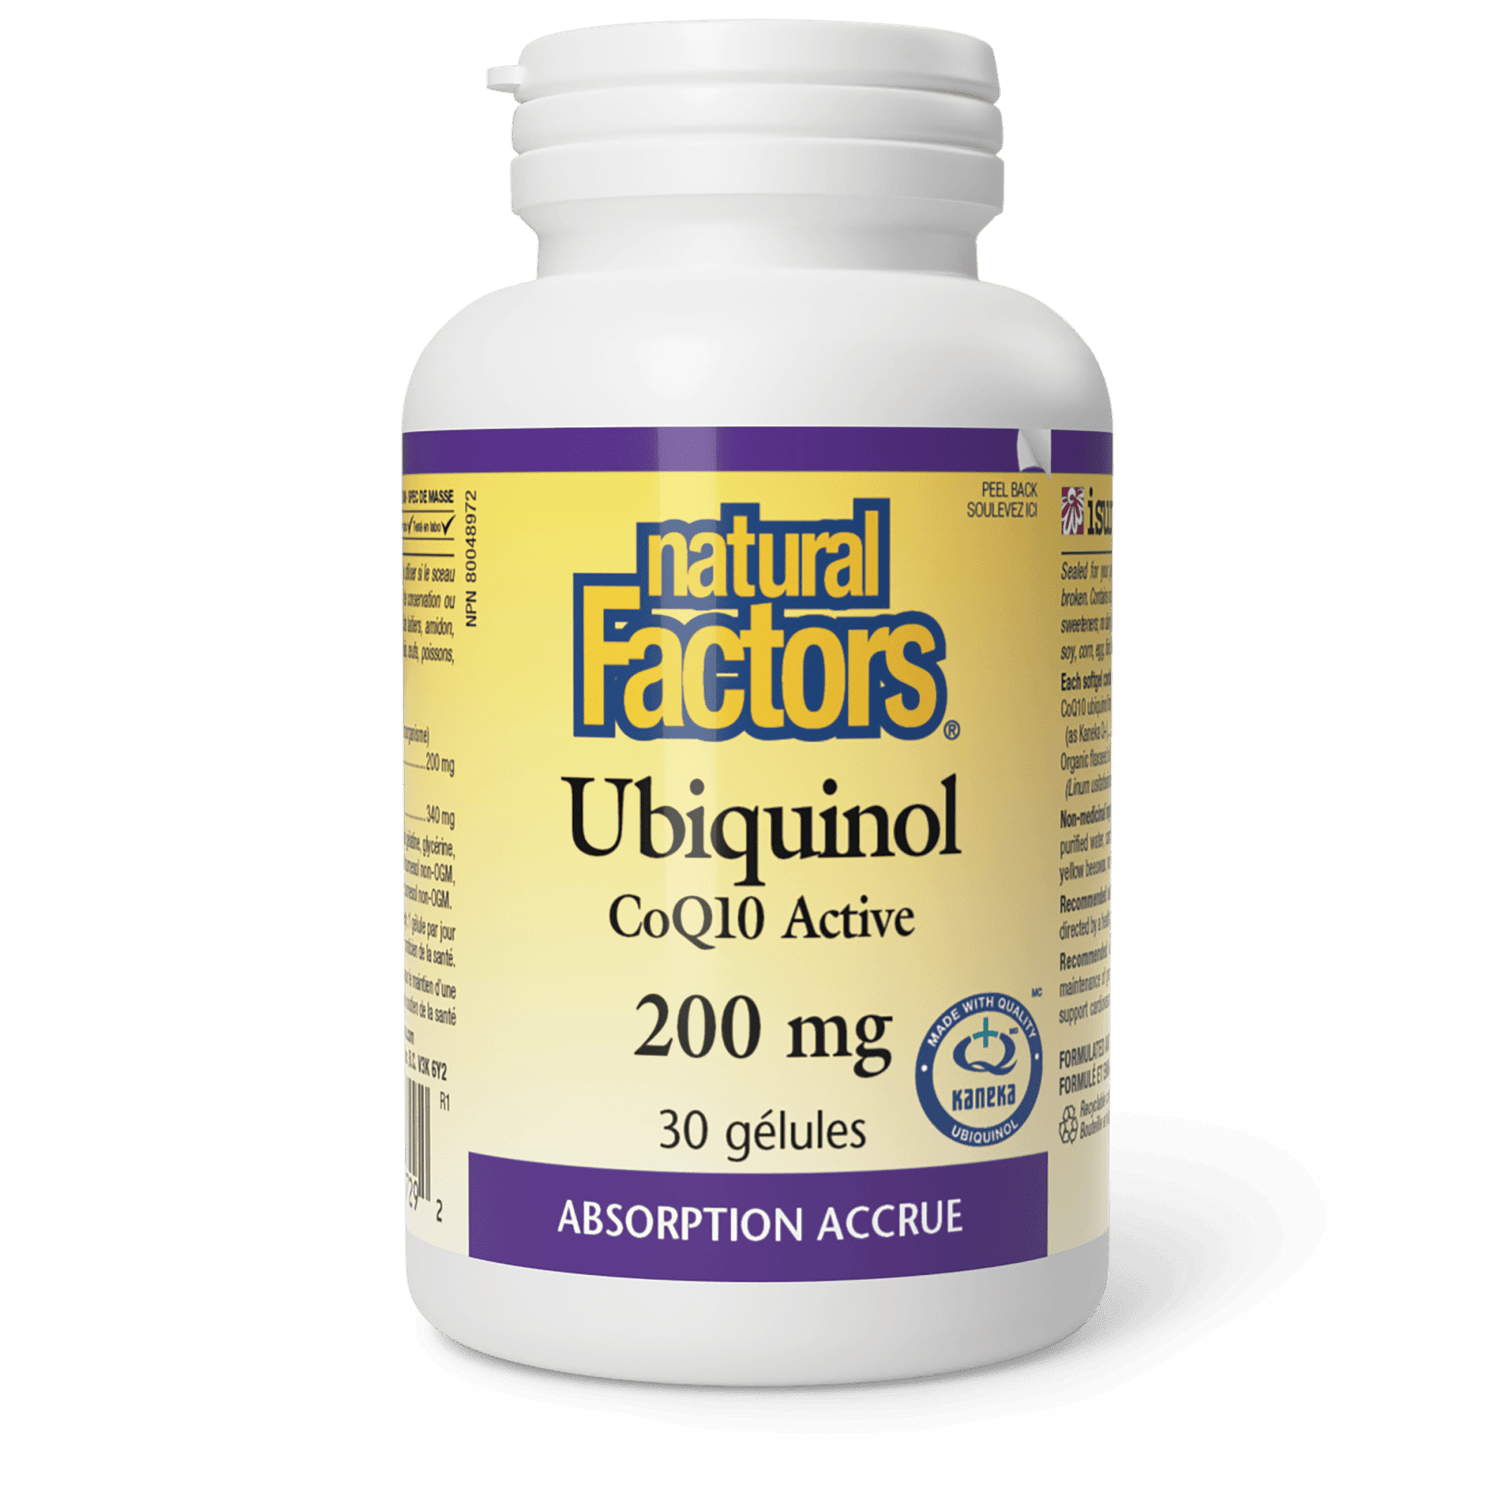 Ubiquinol CoQ10 Active 200 mg, Natural Factors|v|image|20729